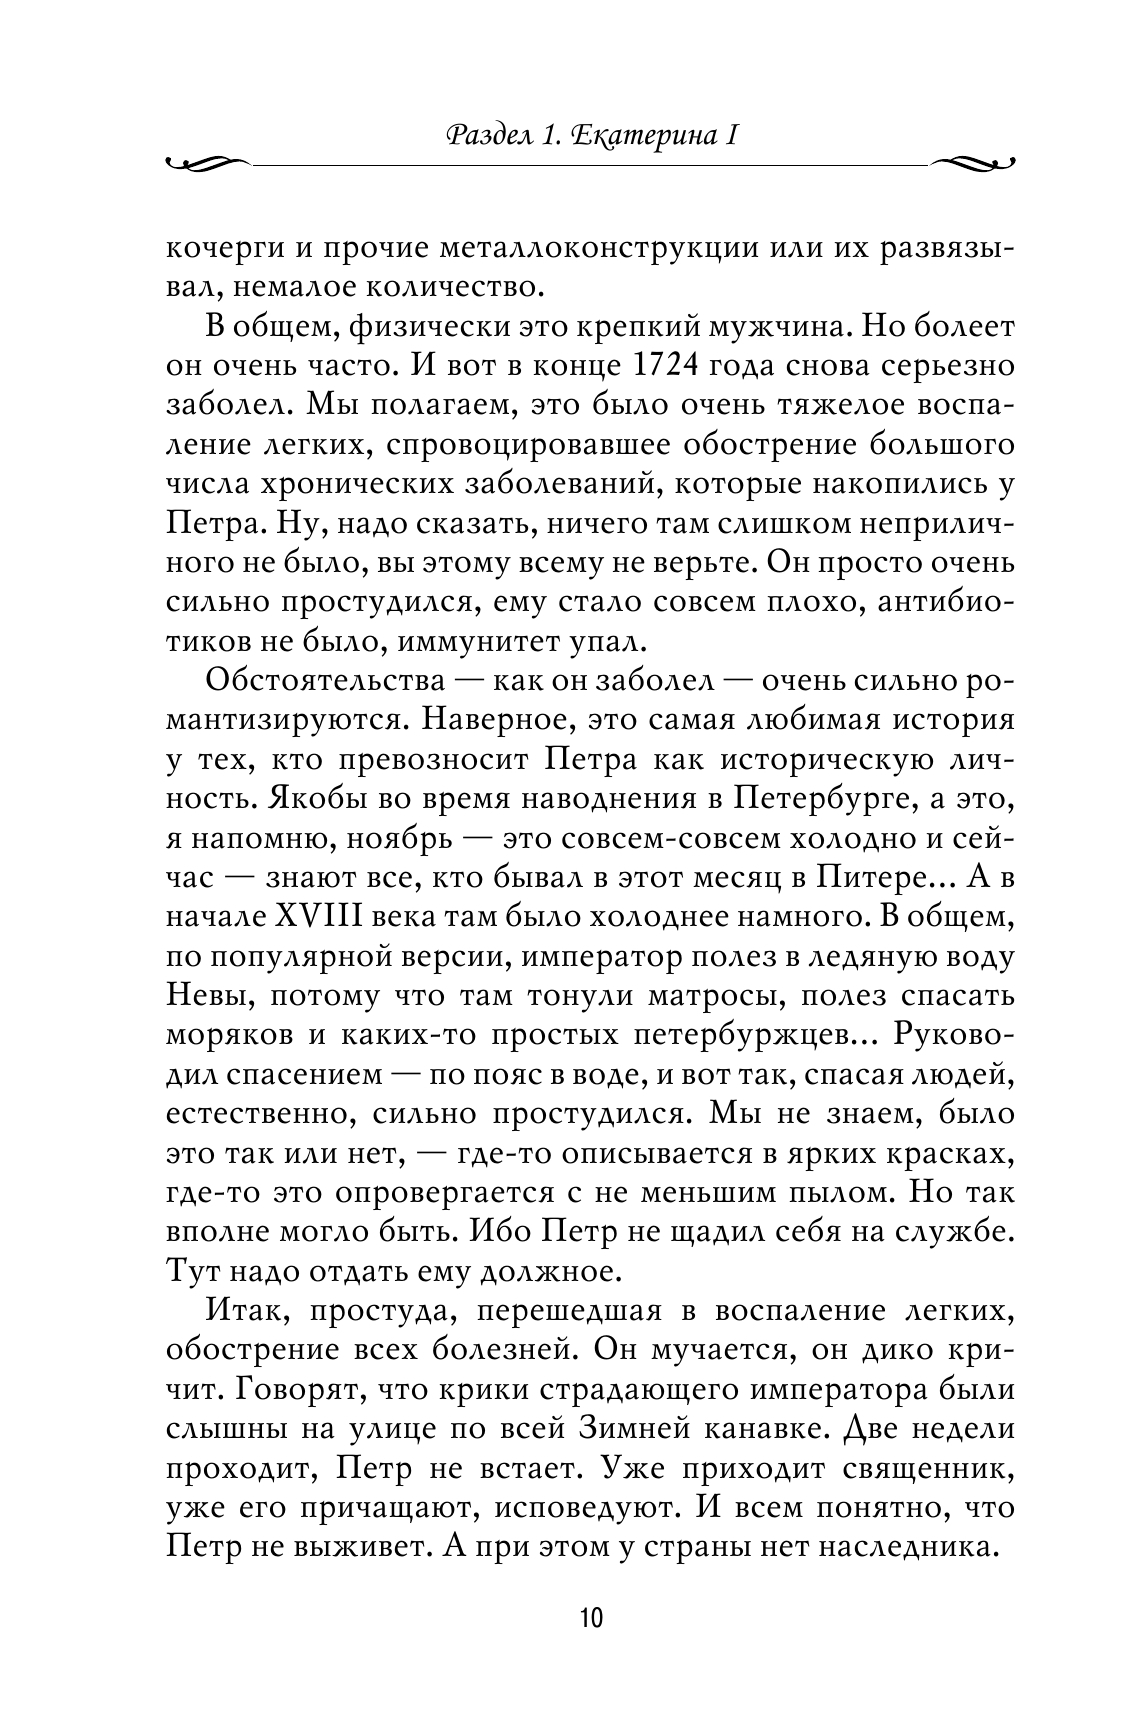 Рассказы из русской истории. XVIII век 8